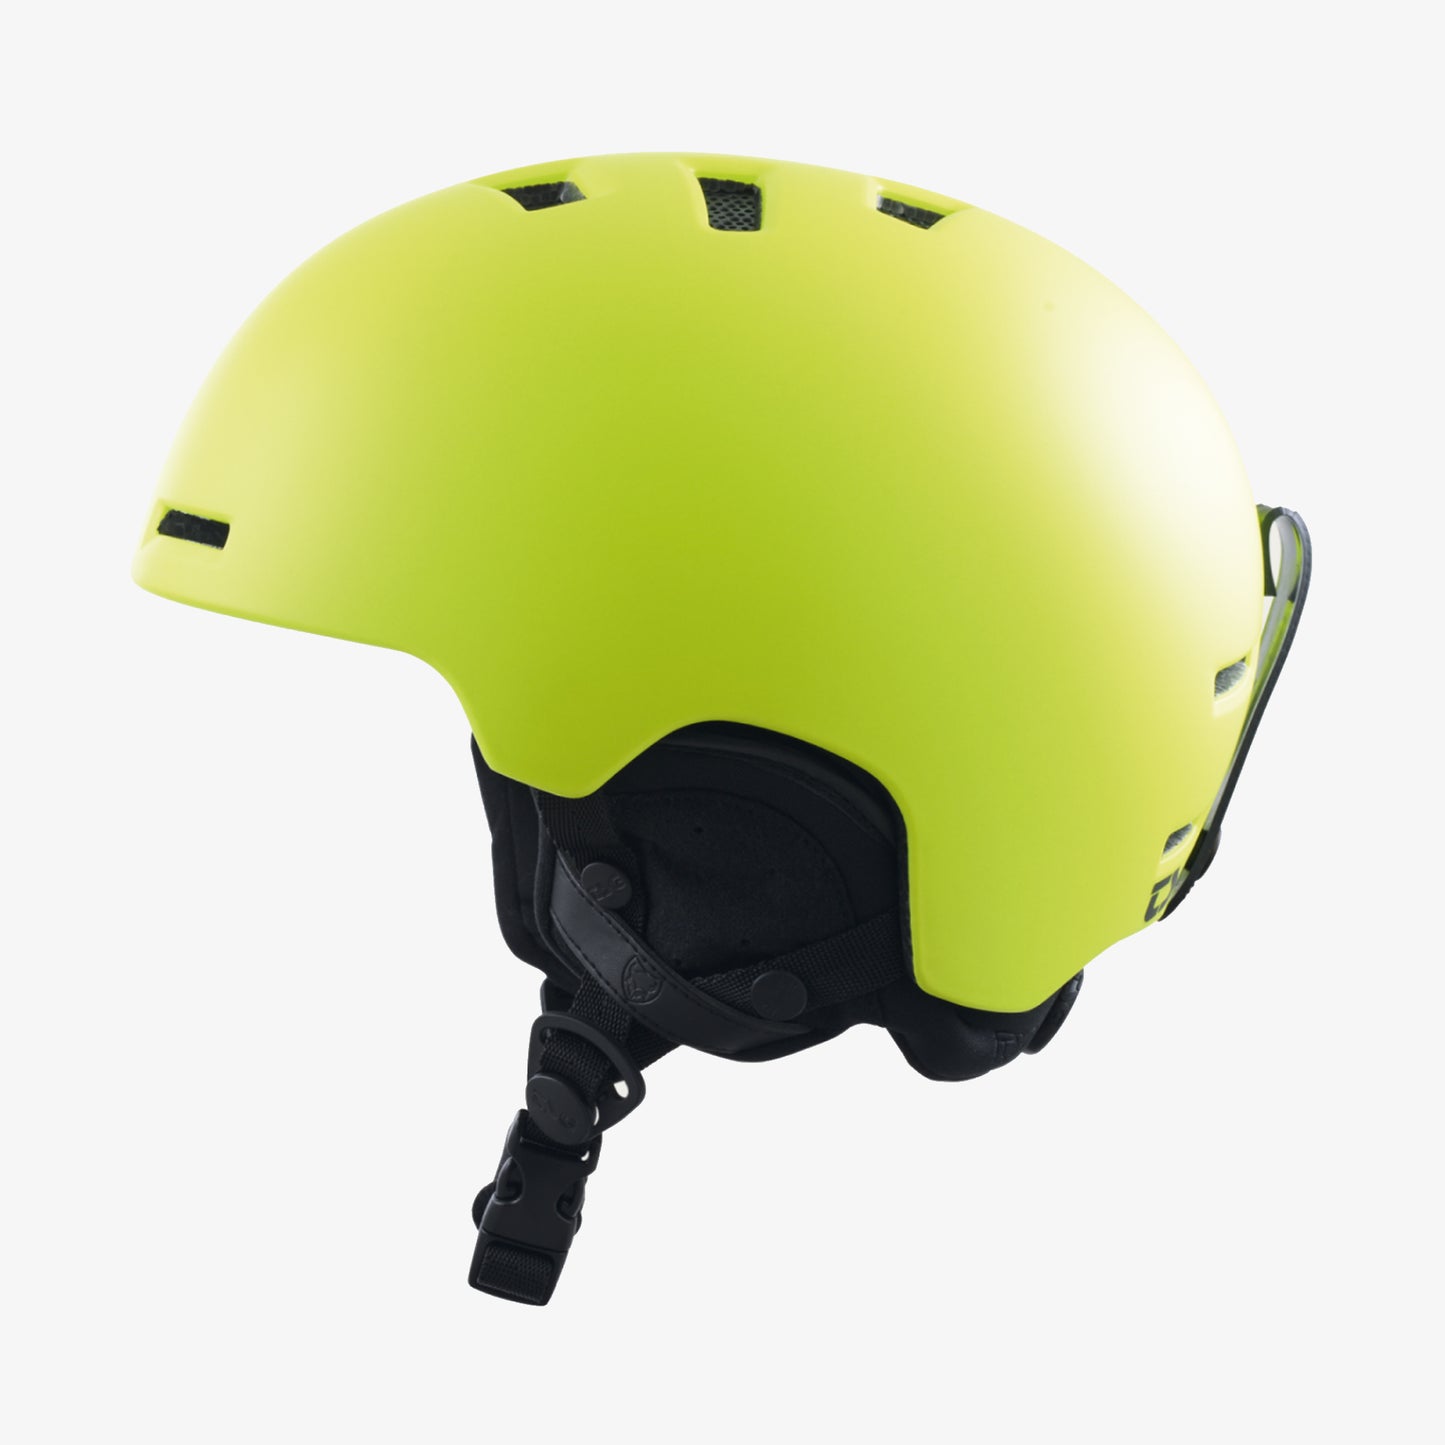 TSG Arctic Nipper Maxi 2.0 Solid Color Helm für Kinder 2024